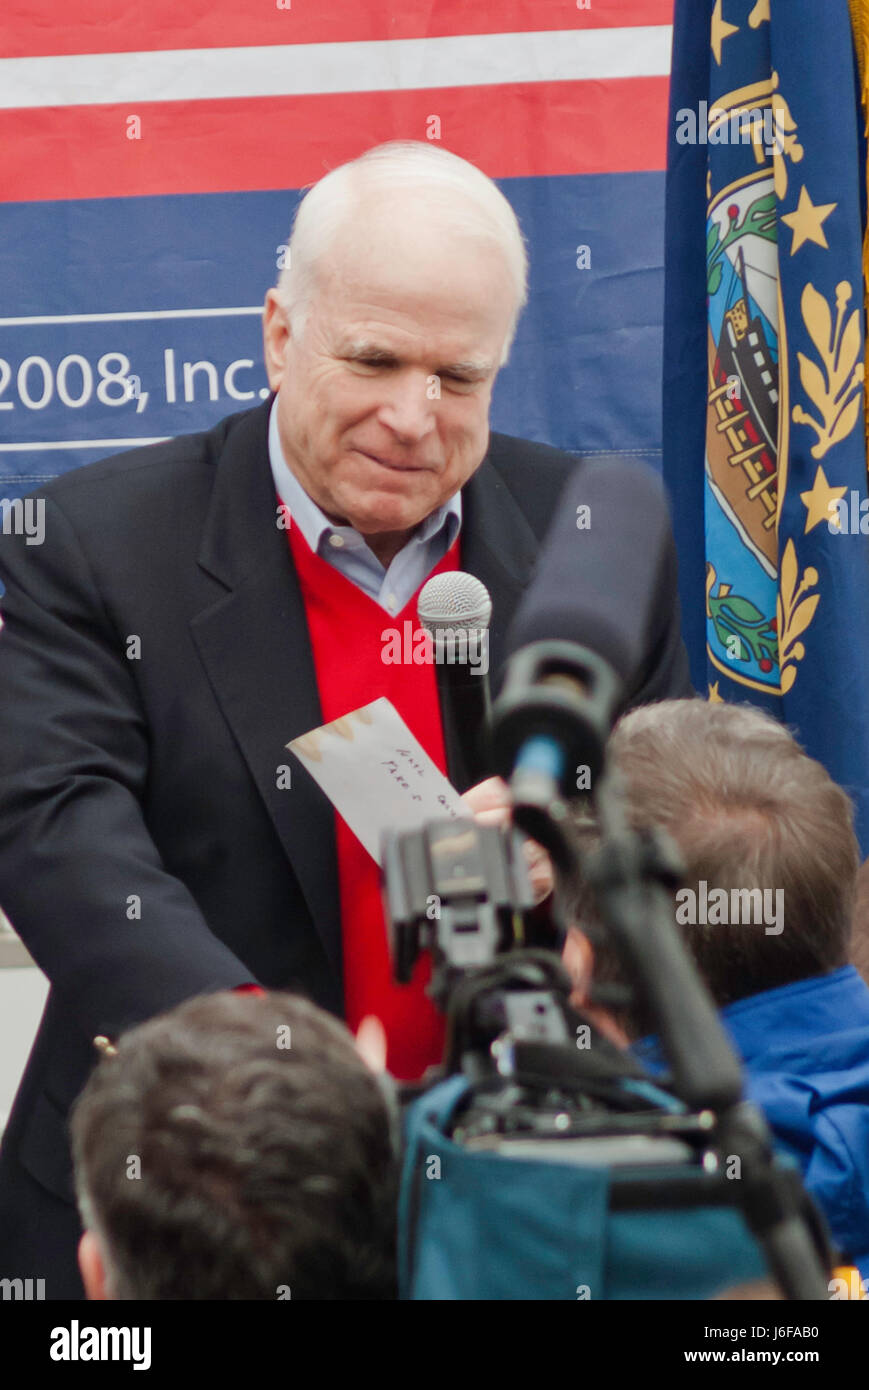 KEENE, NH/US - 7 janvier 2008 : Le sénateur américain John McCain parle aux partisans lors d'un rallye en plein air sur le dernier jour avant le 2008 NH primaire. Banque D'Images